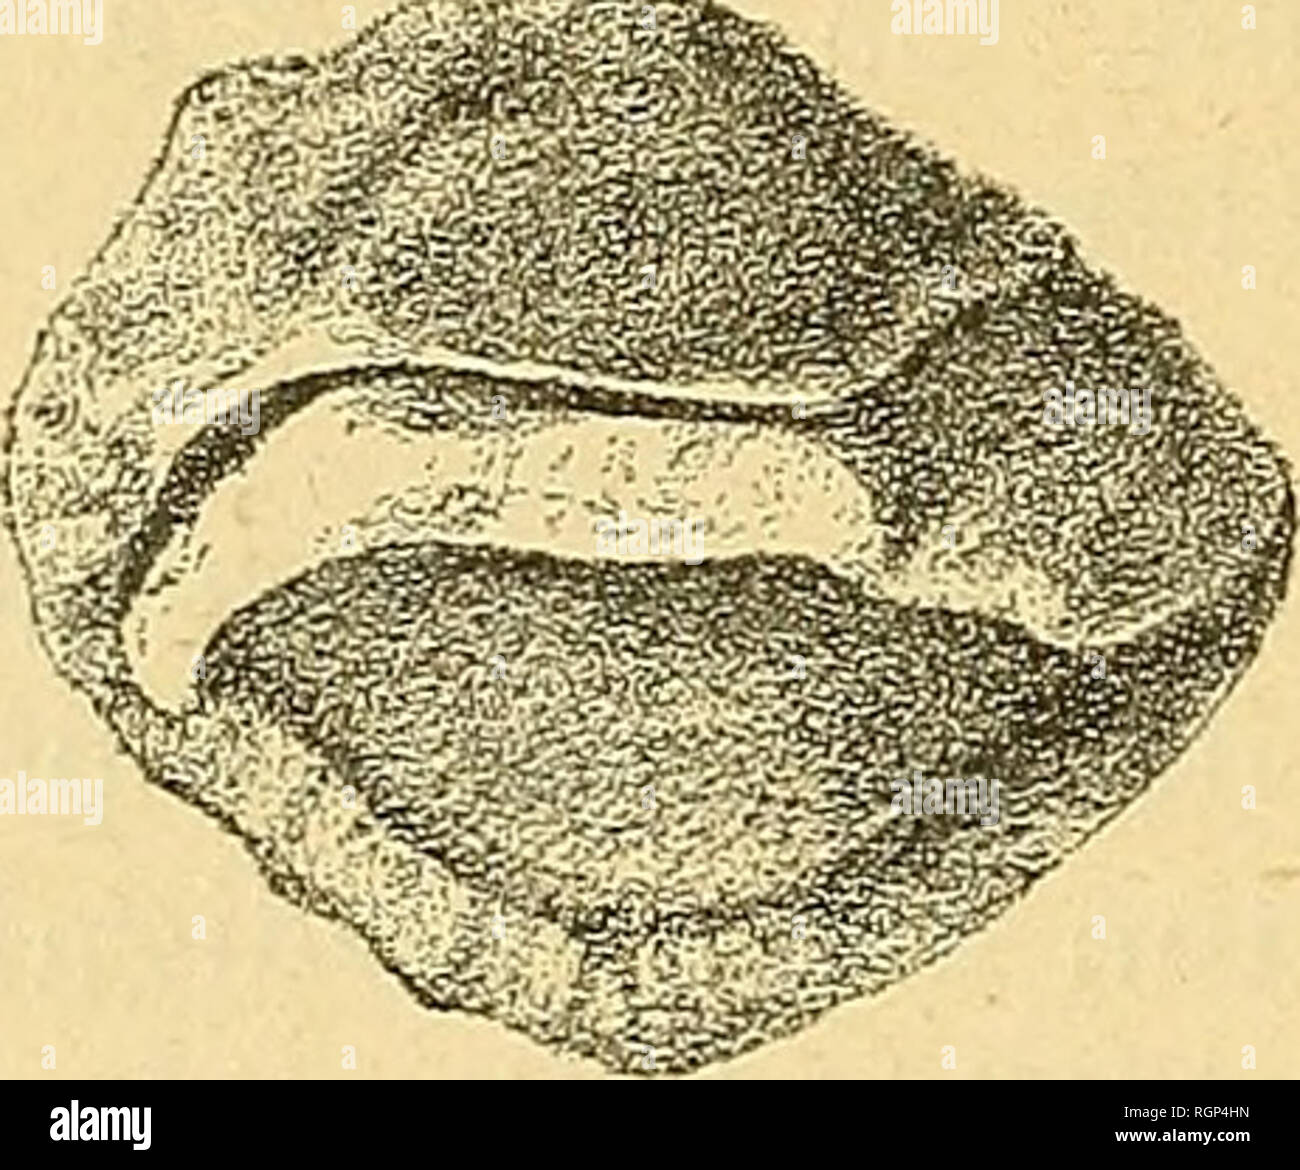 . Bulletin de la SociÃ©tÃ© gÃ©ologique de France. Geology. ^^ FiG. 50. â Otolithus [Sparidarnm) grega- rius KoKEN. Otolitho droit vu sur ses deuxfaces. Gieux fSaucats), Burdigalien. 7 mm. 5, hauteur (largeur) 6 mm. dorsal est dÃ©coupÃ©, la face externe prÃ©sente des rides (fig. al).. FiG. 51. â Otolithus [Sparidarum) gregariusKoKEJi. Otolithe gauche vu sur ses deux faces. Saint-Paul-de-Dax (moulin de Gabannes), Burdigalien. MÃªme espÃ¨ce. Un otolithe droit Ã face externe lÃ©gÃ¨rement bom- bÃ©e sur le bord ventral. Probablement de la mÃªme espÃ¨ce. 12Â° Salles (moulin DÃ©bat). HelvÃ©tien.. Plea Stock Photo